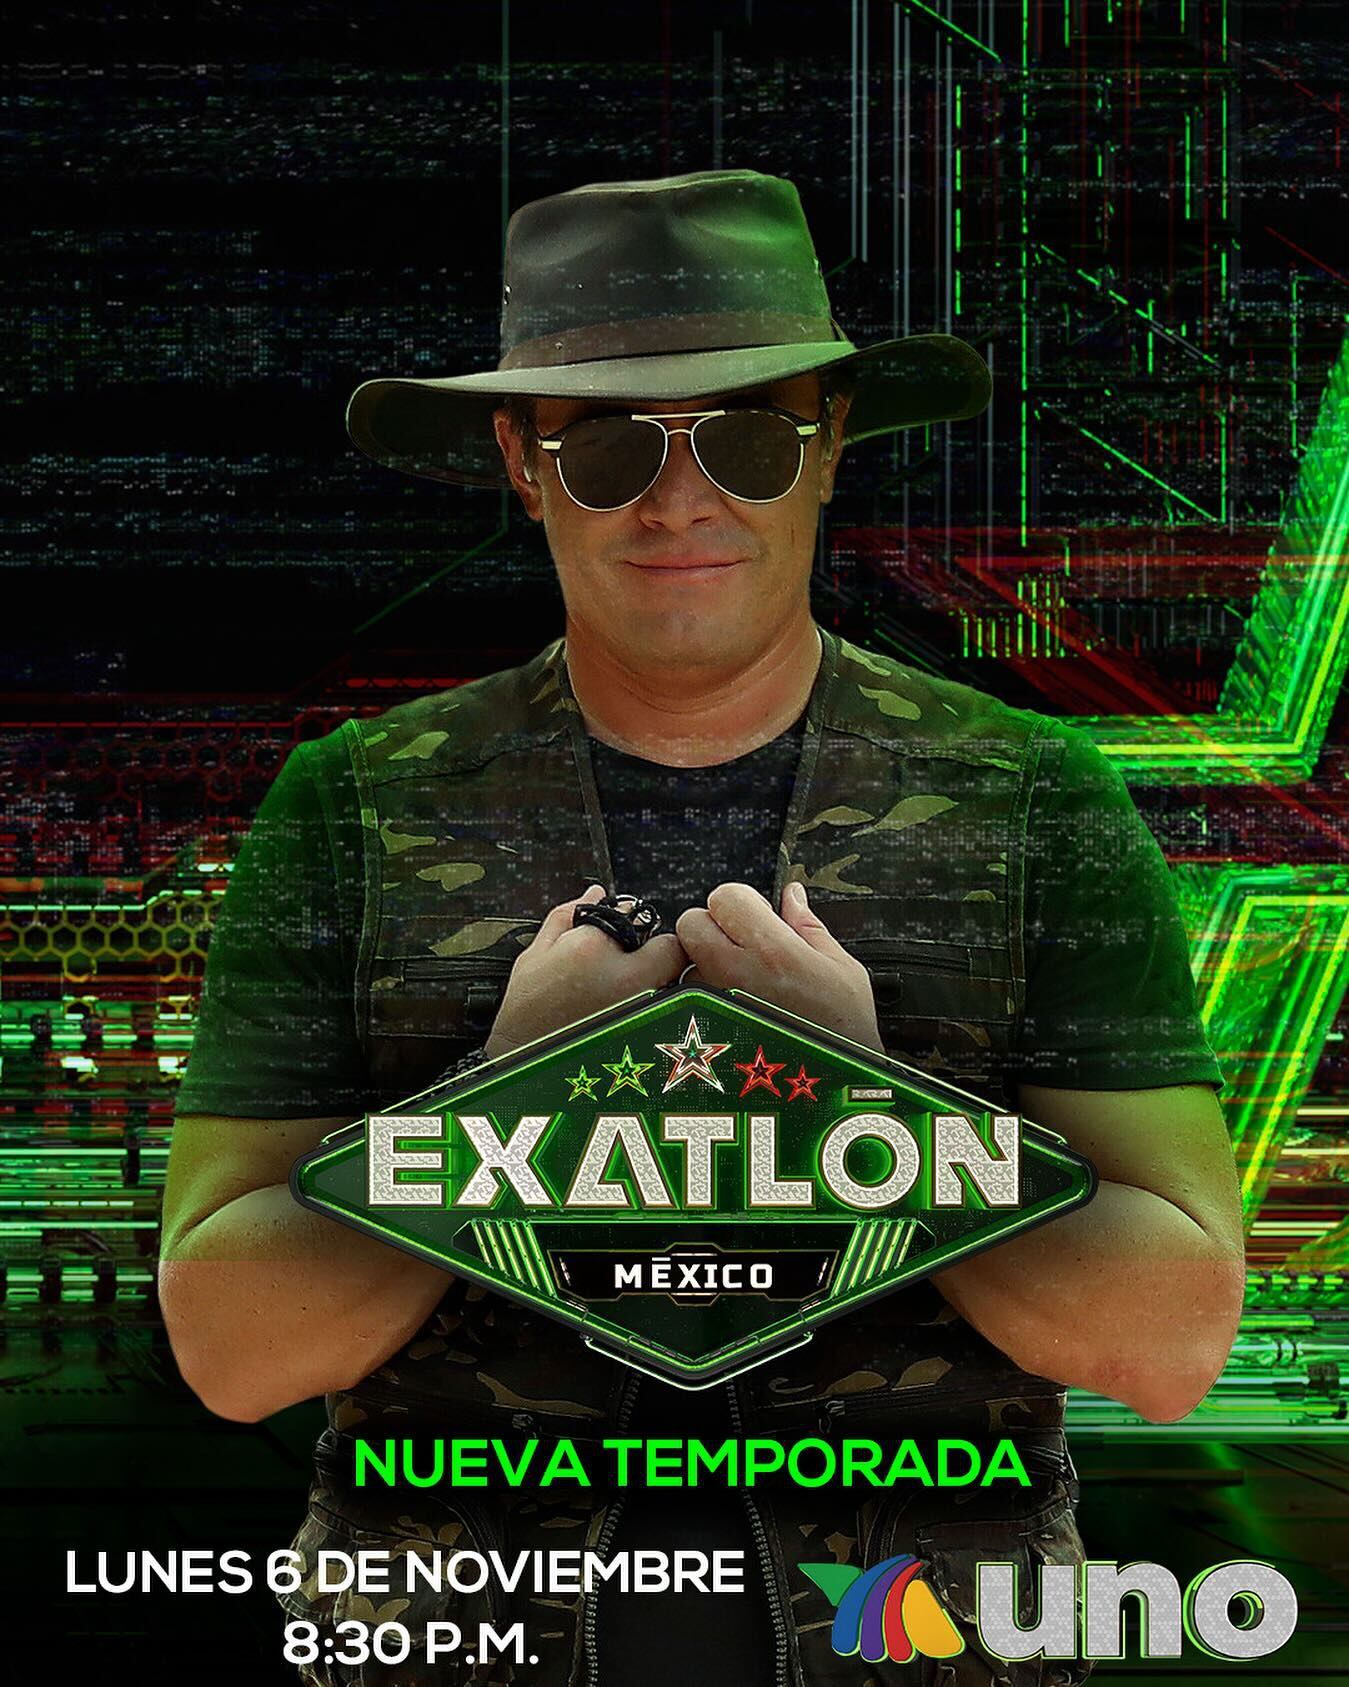 Los seguidores de Exatlón México esperan con entusiasmo el inicio de la próxima temporada llena de emoción y rivalidad